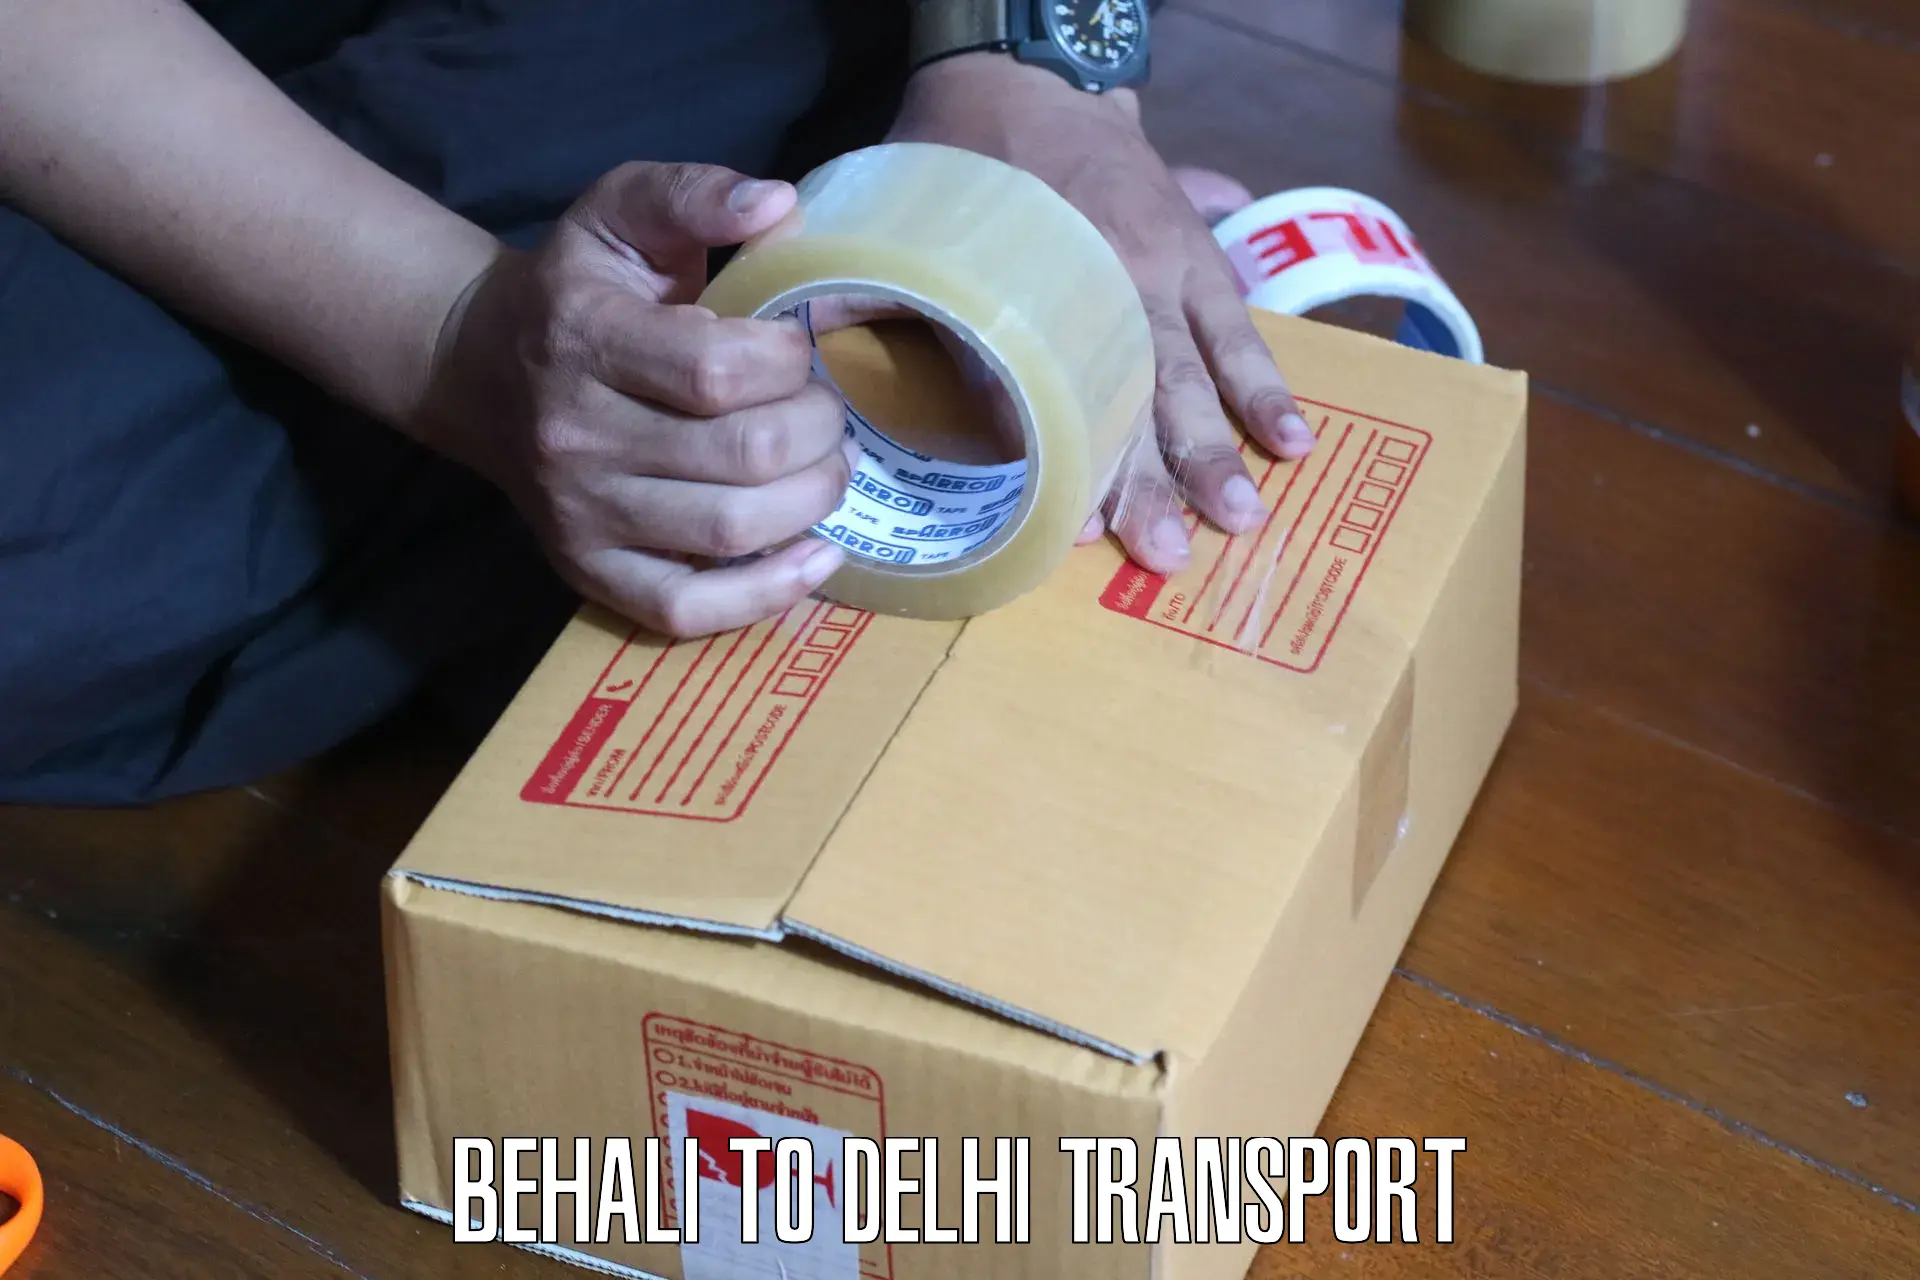 Daily transport service Behali to Kalkaji